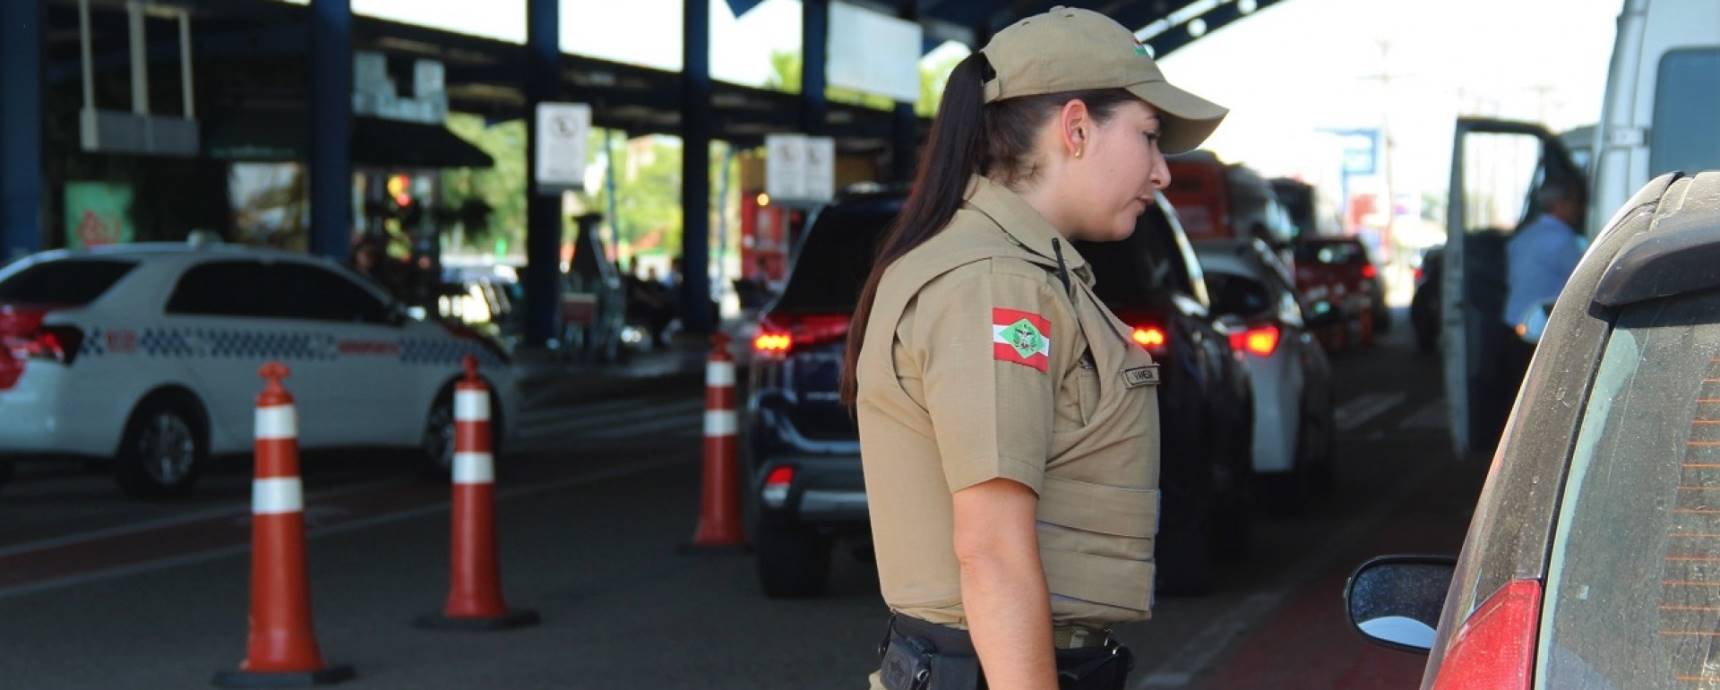 Polícia Militar passa a atuar no Aeroporto de Florianópolis